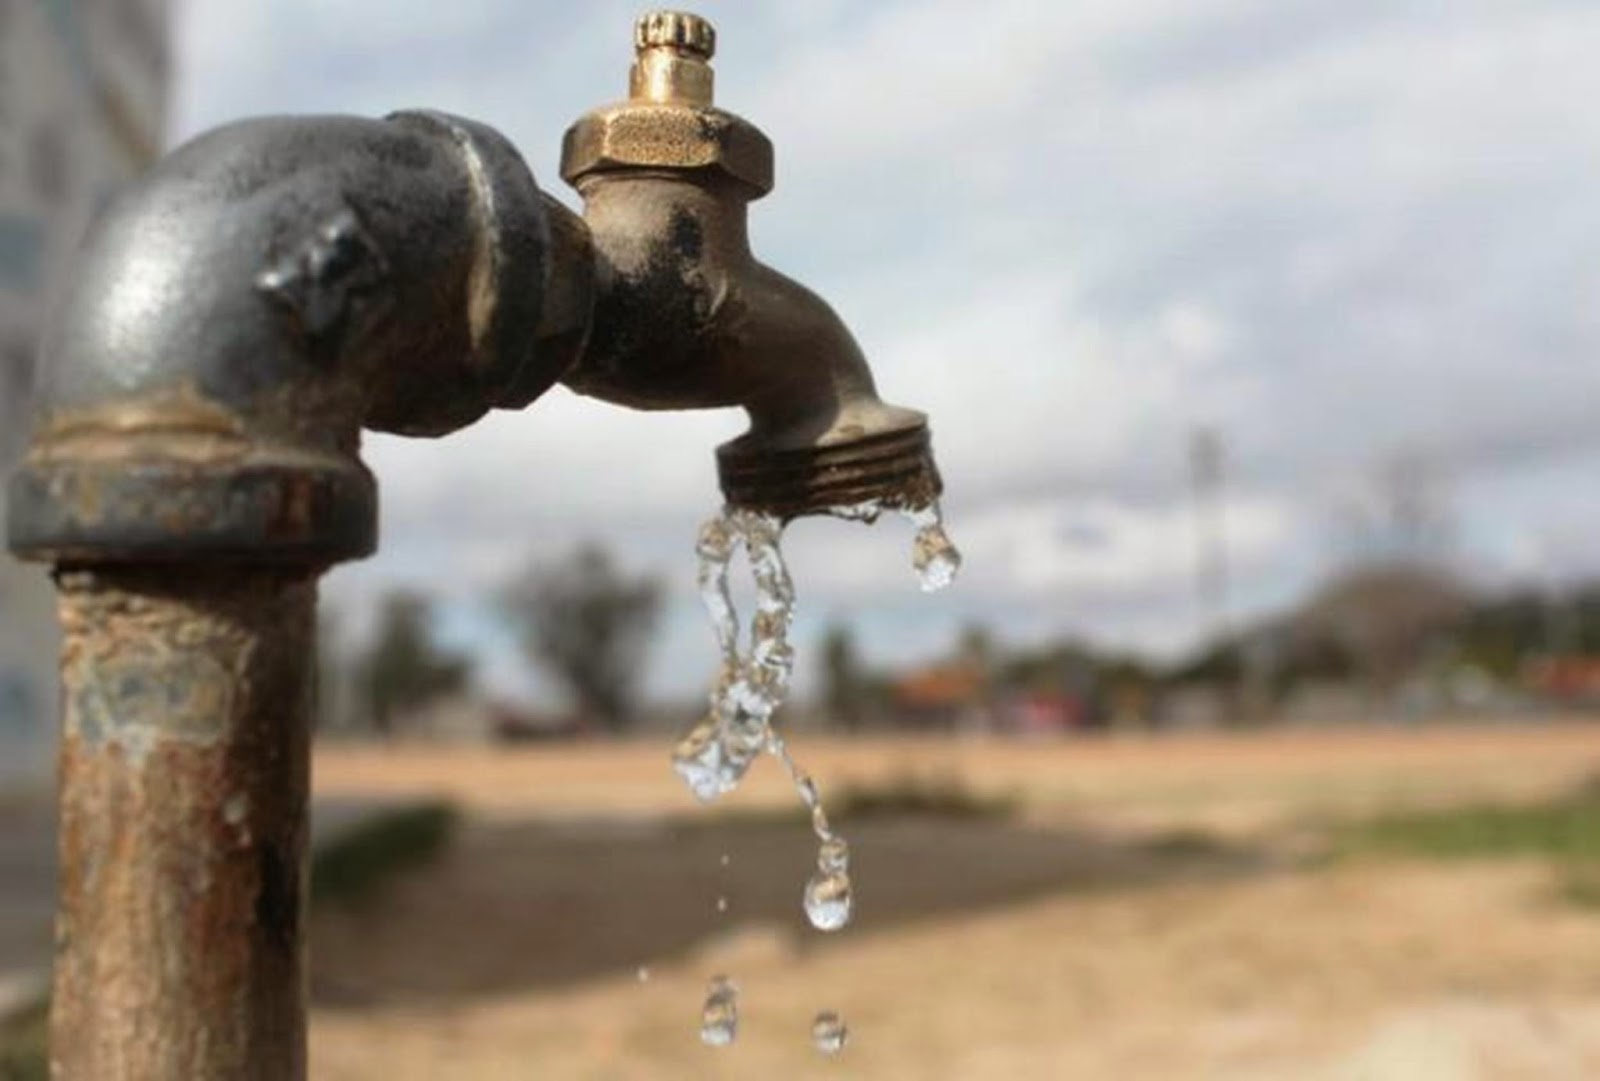 Escasez de agua Mina La India